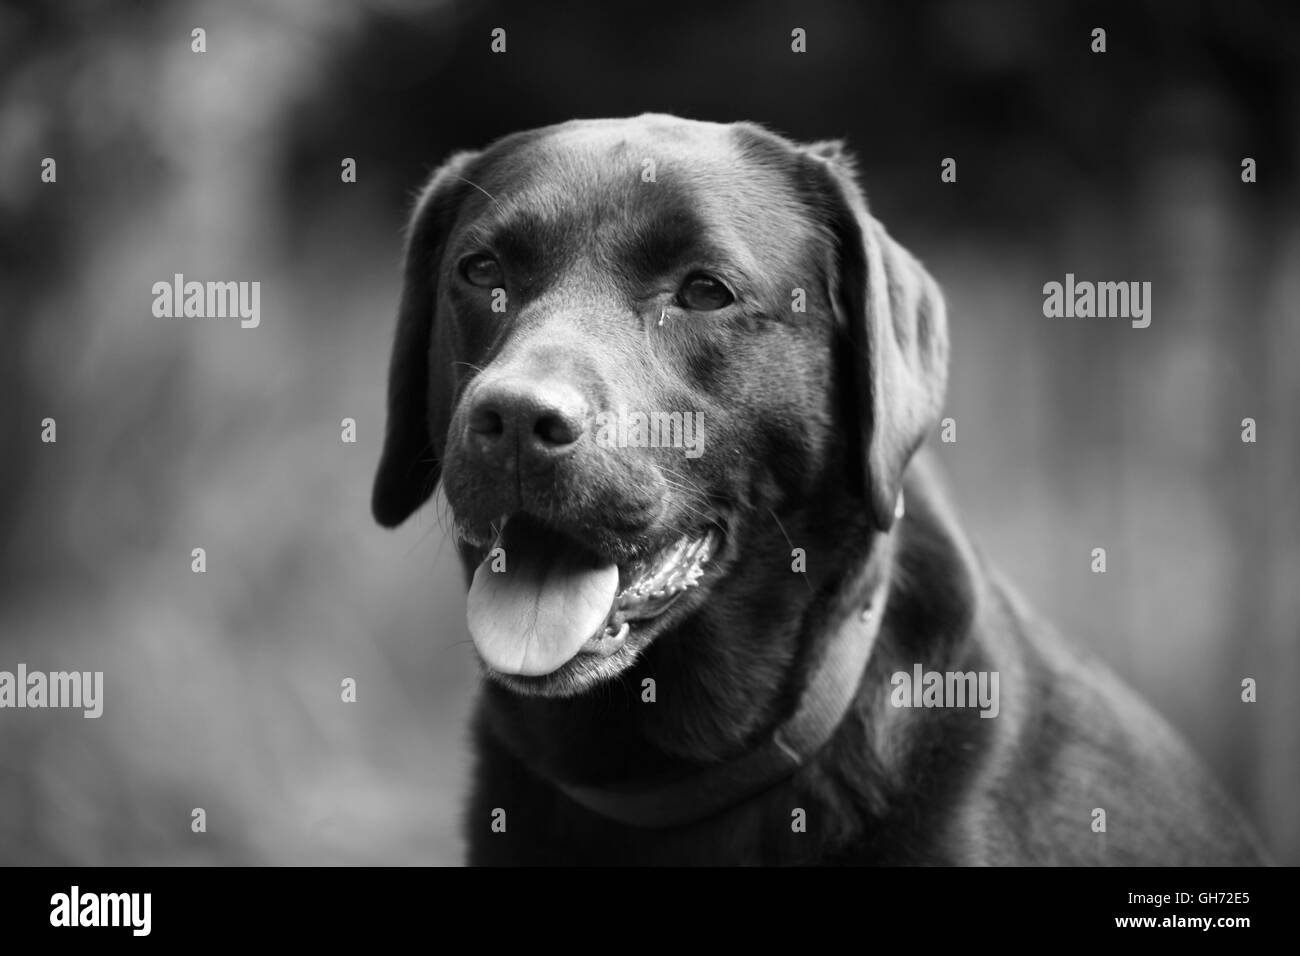 Hund im Freien, große Rasse Hund, Hund-Fotografie, Hund Portrait, Tierärzte, schwarz / weiß Fotografie, Tiere, Haustiere Stockfoto